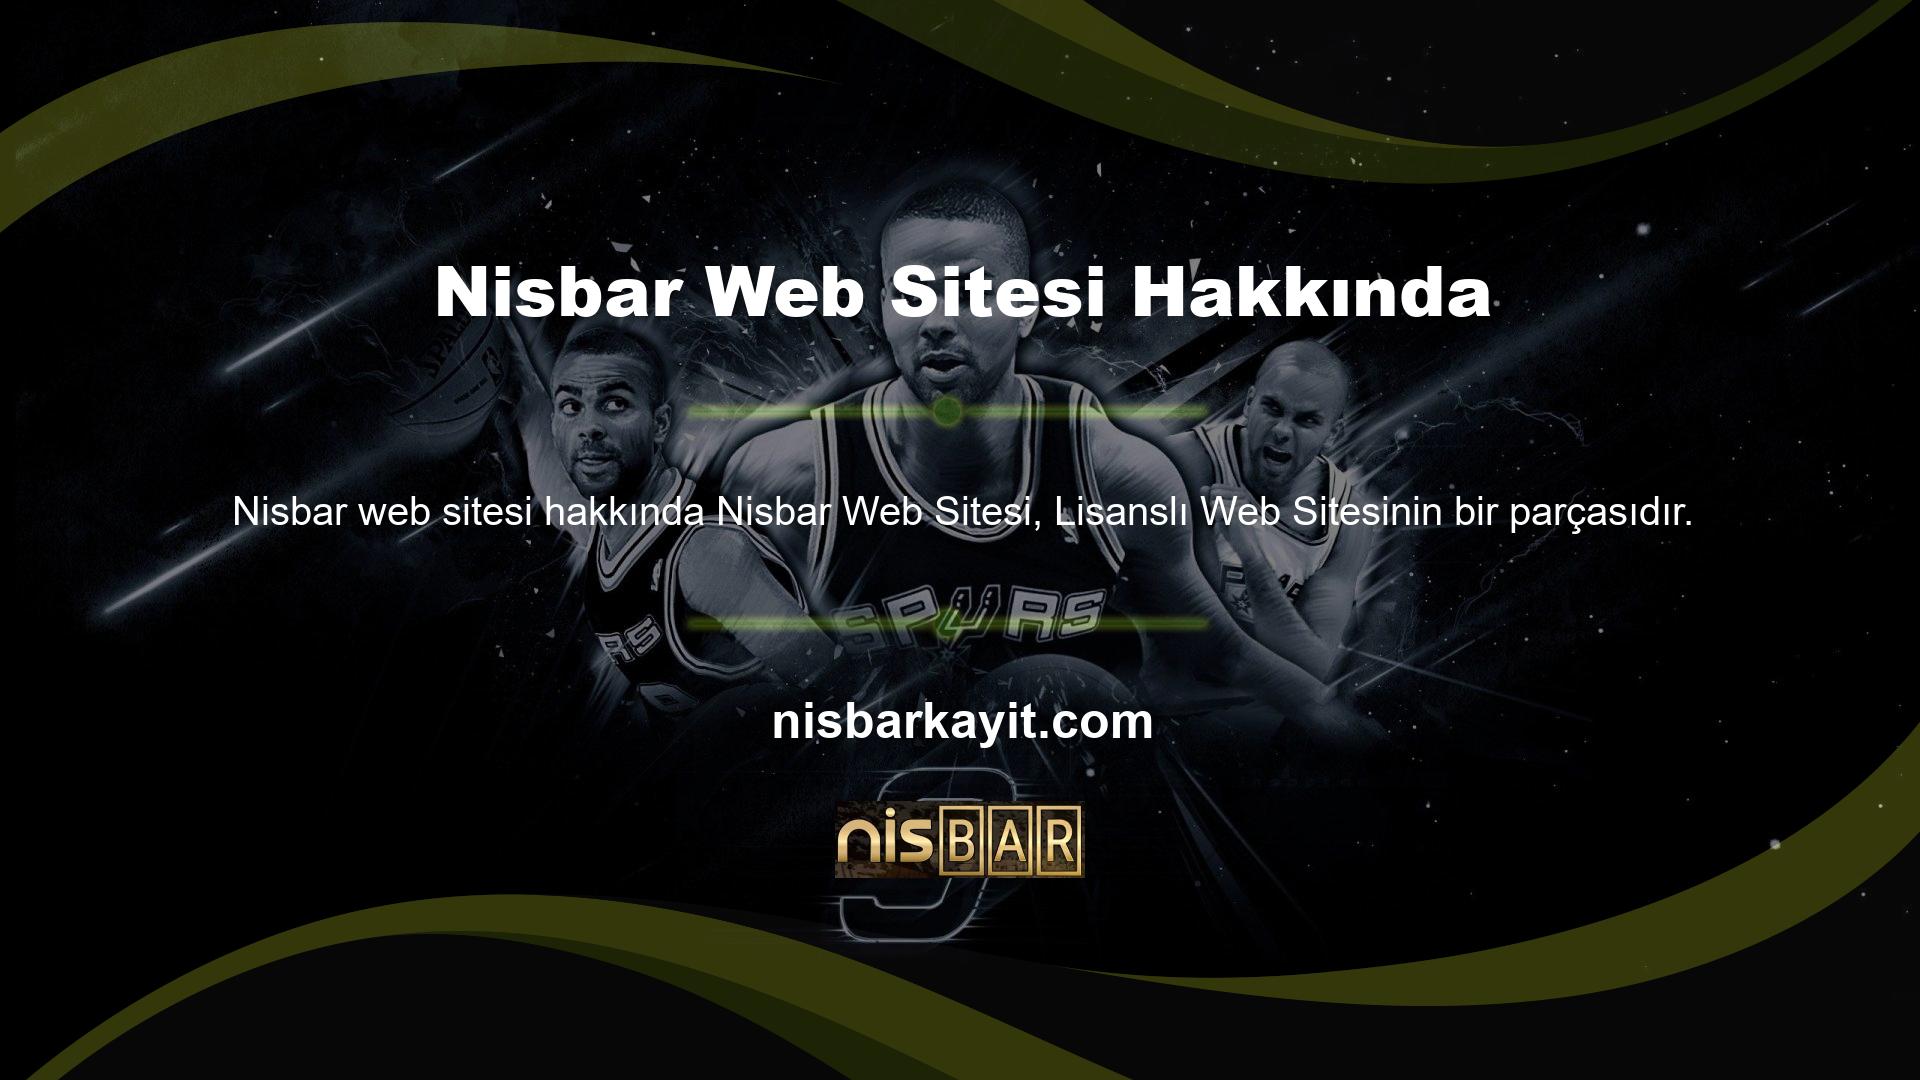 Nisbar web sitesi hakkında